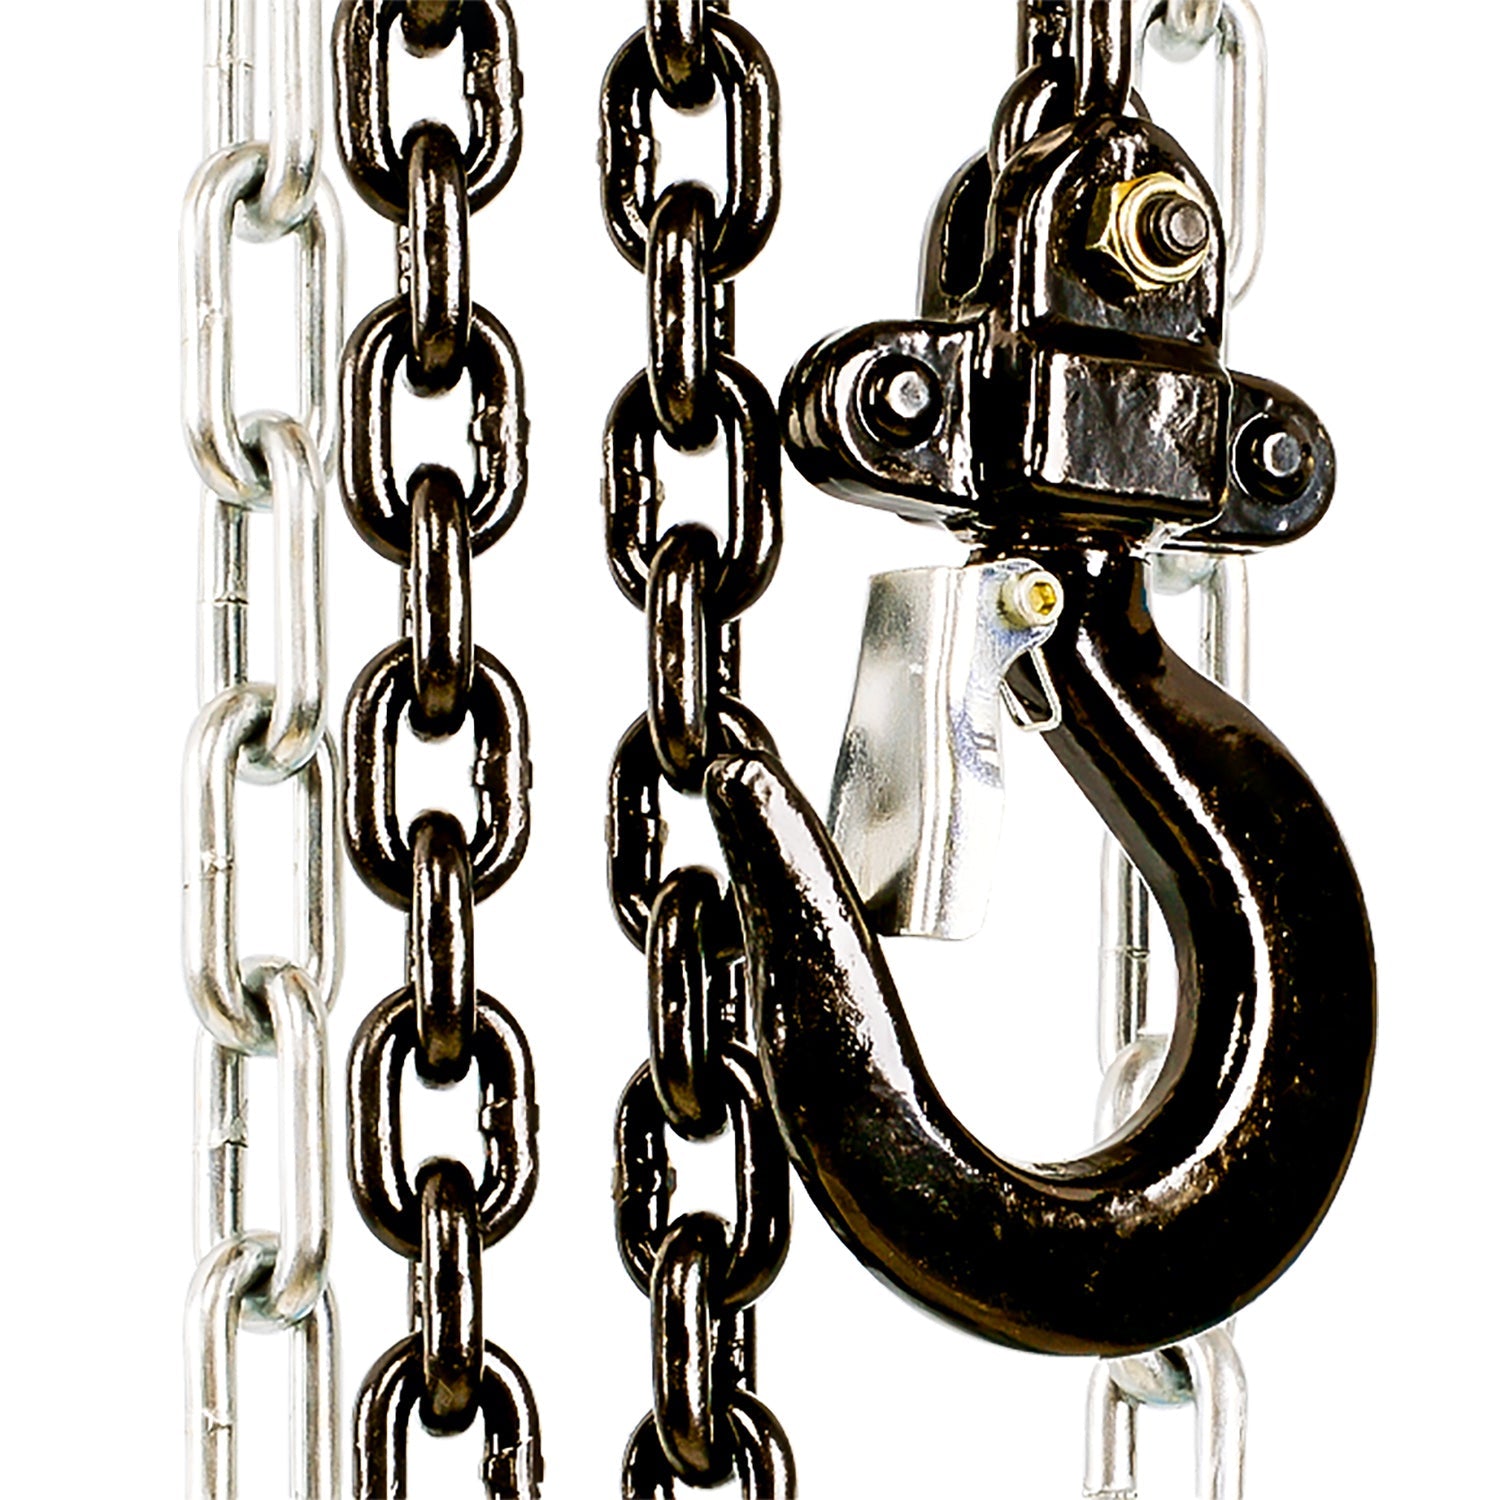 SuperHandy Chain Hoist - 1/2 Ton Capacity